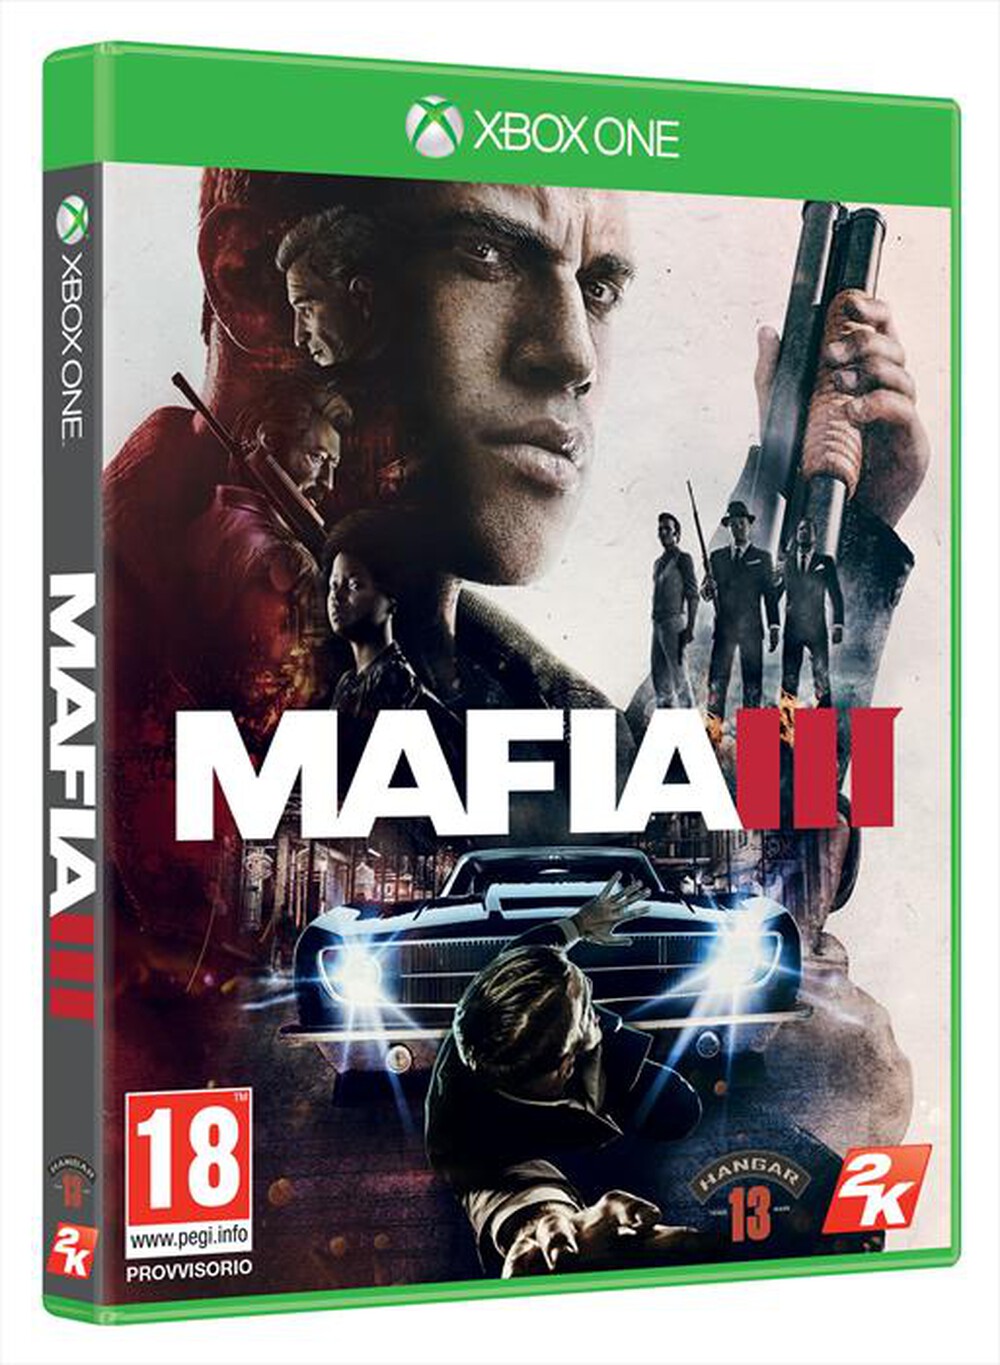 "TAKE TWO - Mafia III Xbox One"